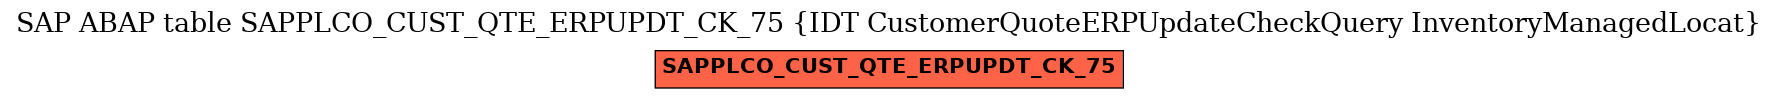 E-R Diagram for table SAPPLCO_CUST_QTE_ERPUPDT_CK_75 (IDT CustomerQuoteERPUpdateCheckQuery InventoryManagedLocat)